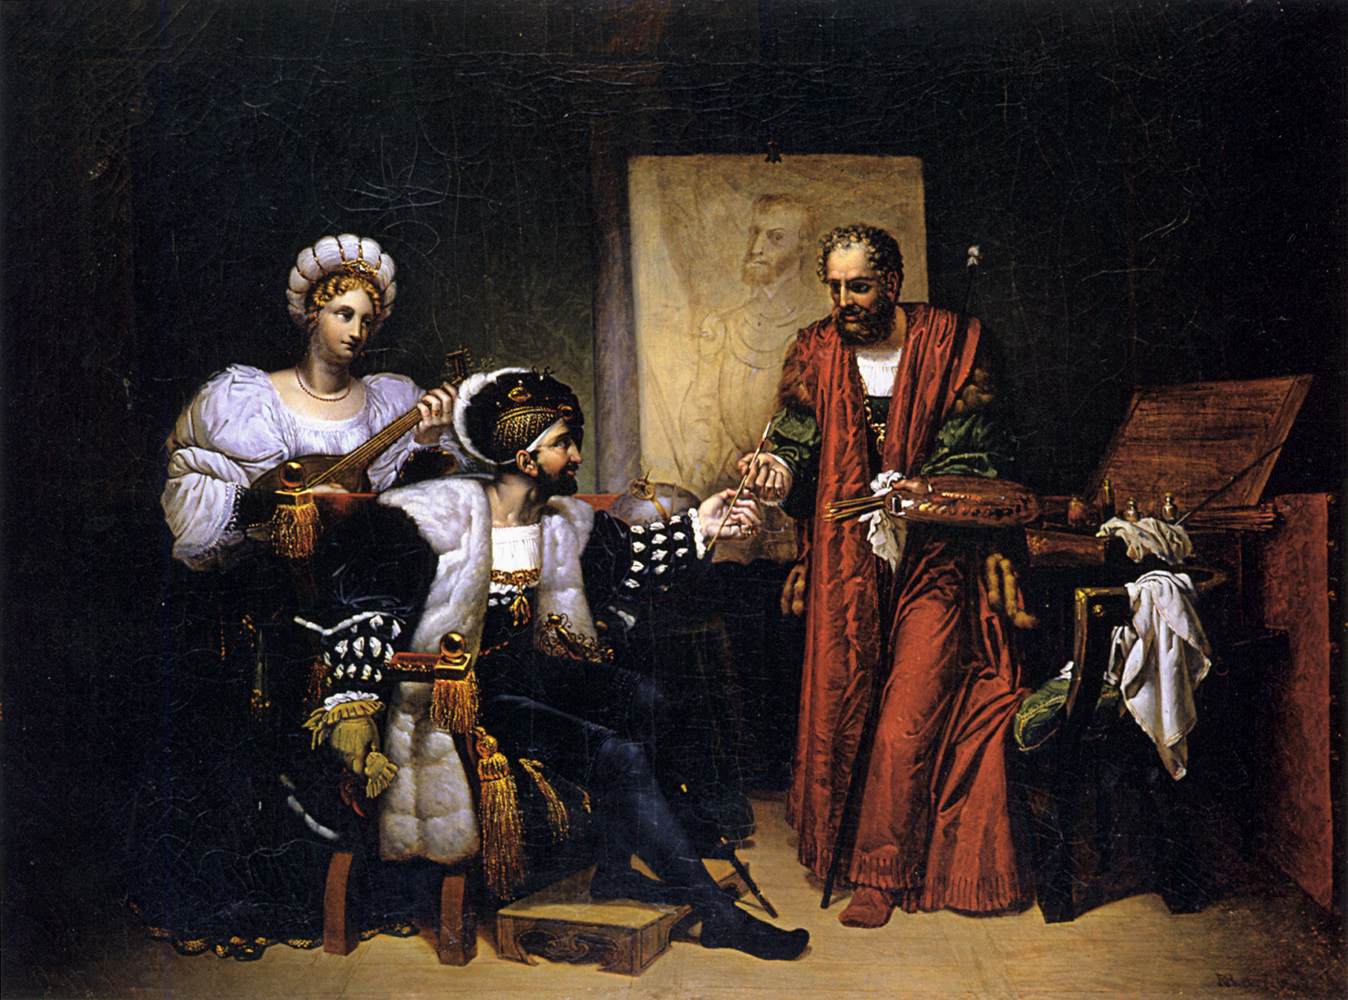 Charles V Picking Up Titian's Brush